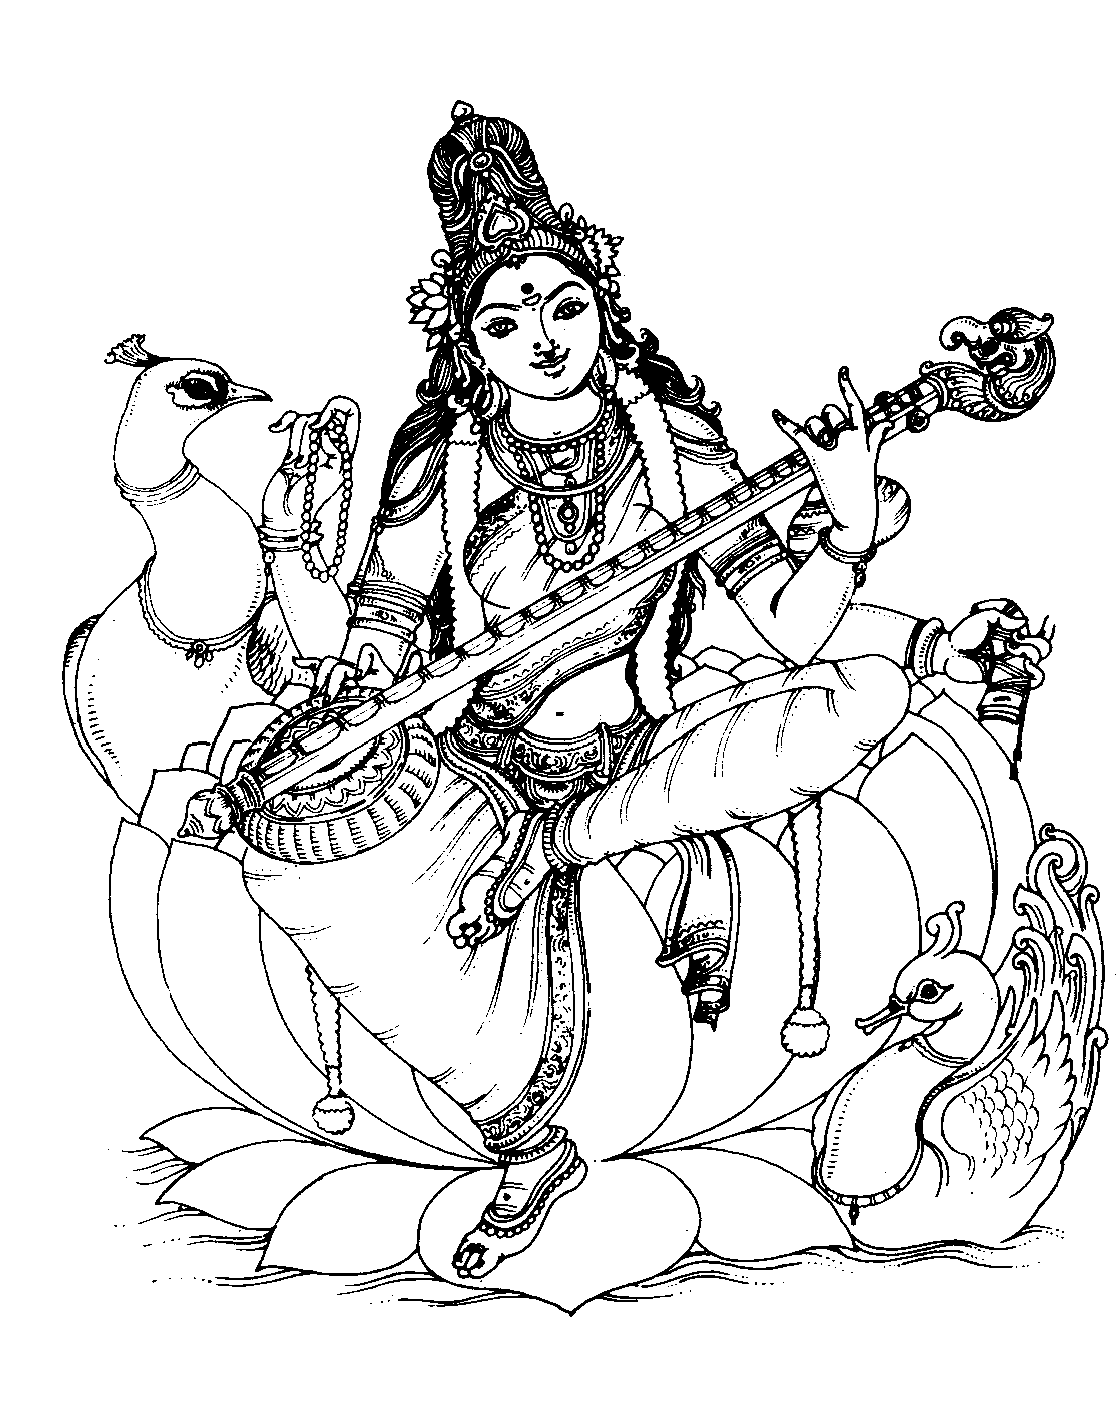 India saraswati 1 - Image with : Couple, Guitar, Music, Woman, Saraswati